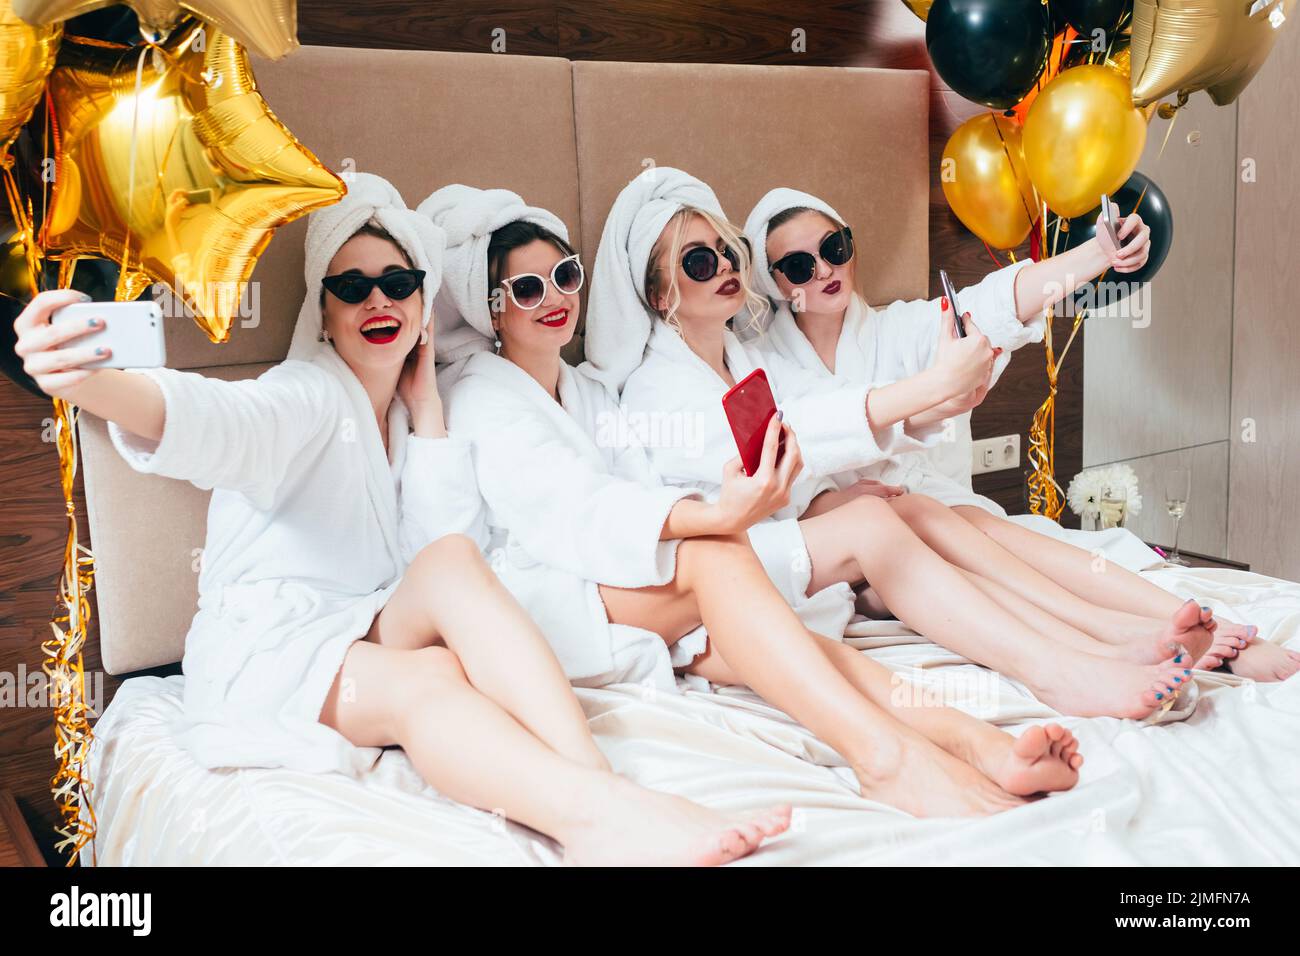 bathrobe party girls selfie leisure lifestyle Stock Photo